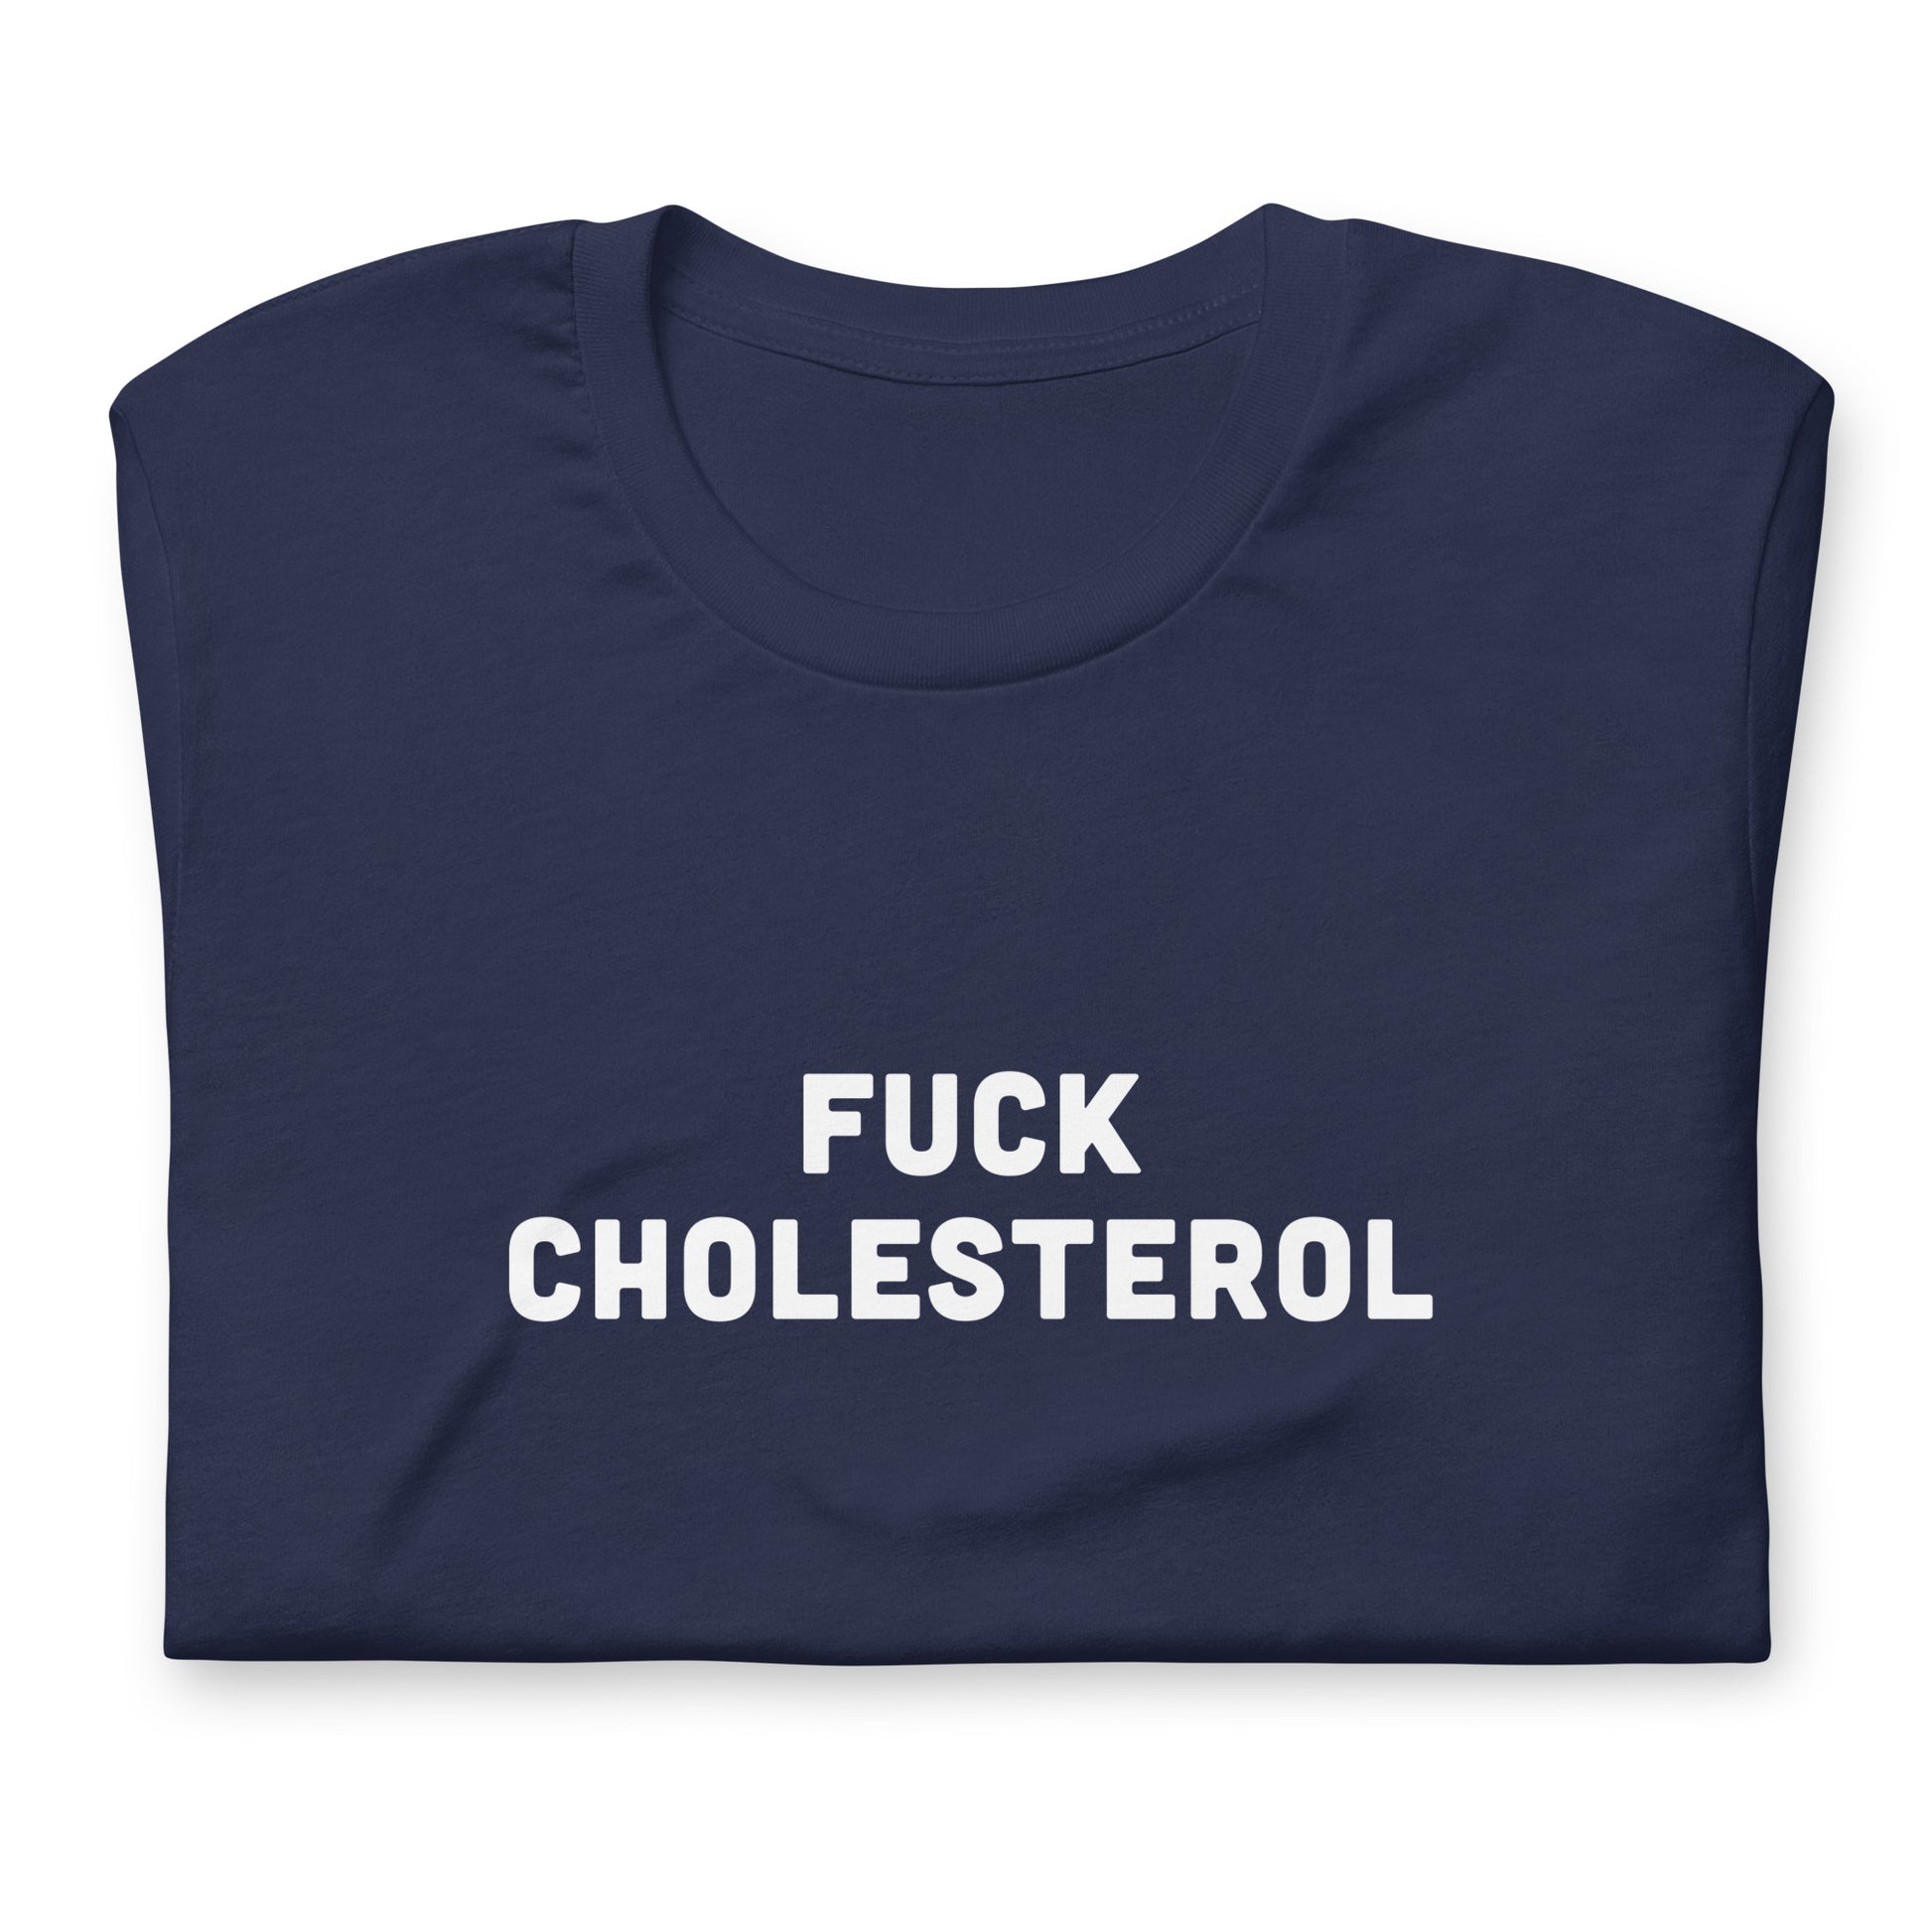 Fuck Cholesterol T-Shirt Size L Color Black